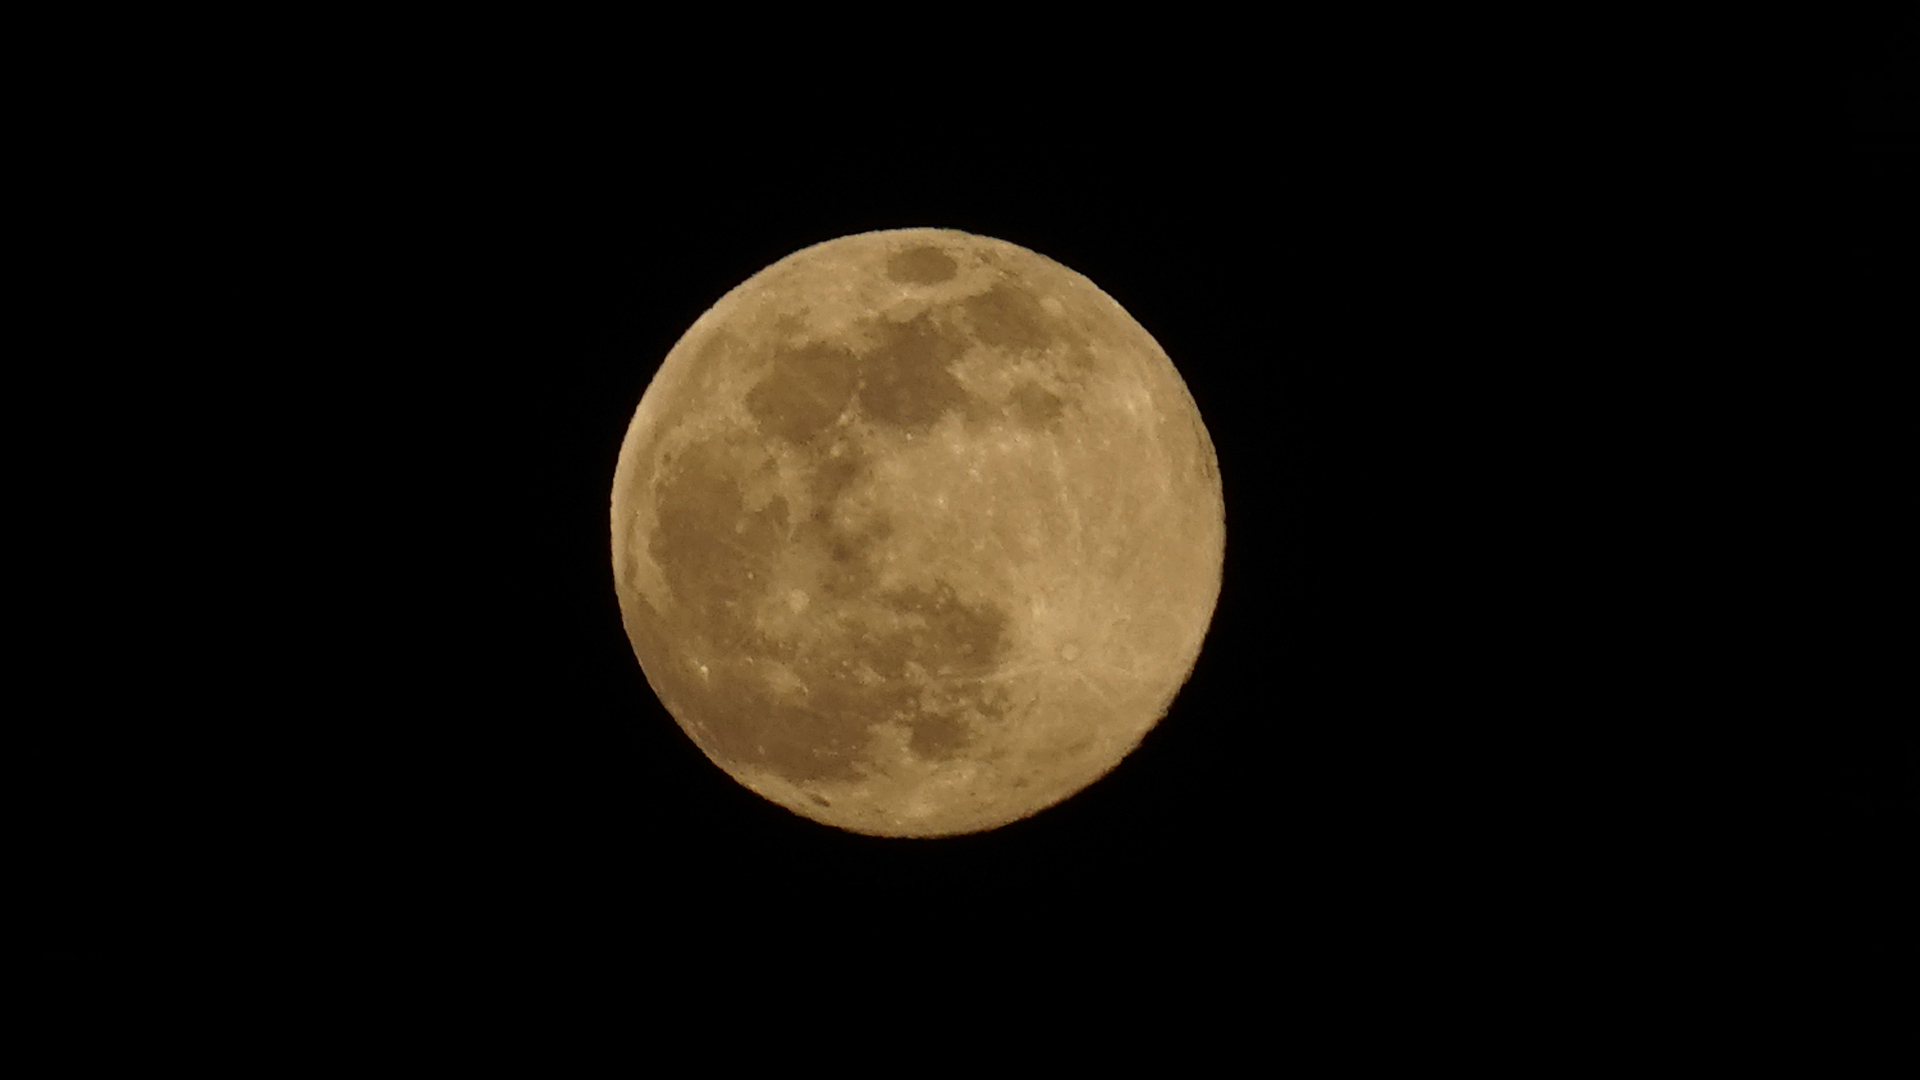 Fotostrecke Mond, Abbildung 20: Vollmond vor Ostern in maximaler Erdnähe ("Oster-Supermond" vom 07.04.2020 über Wien)